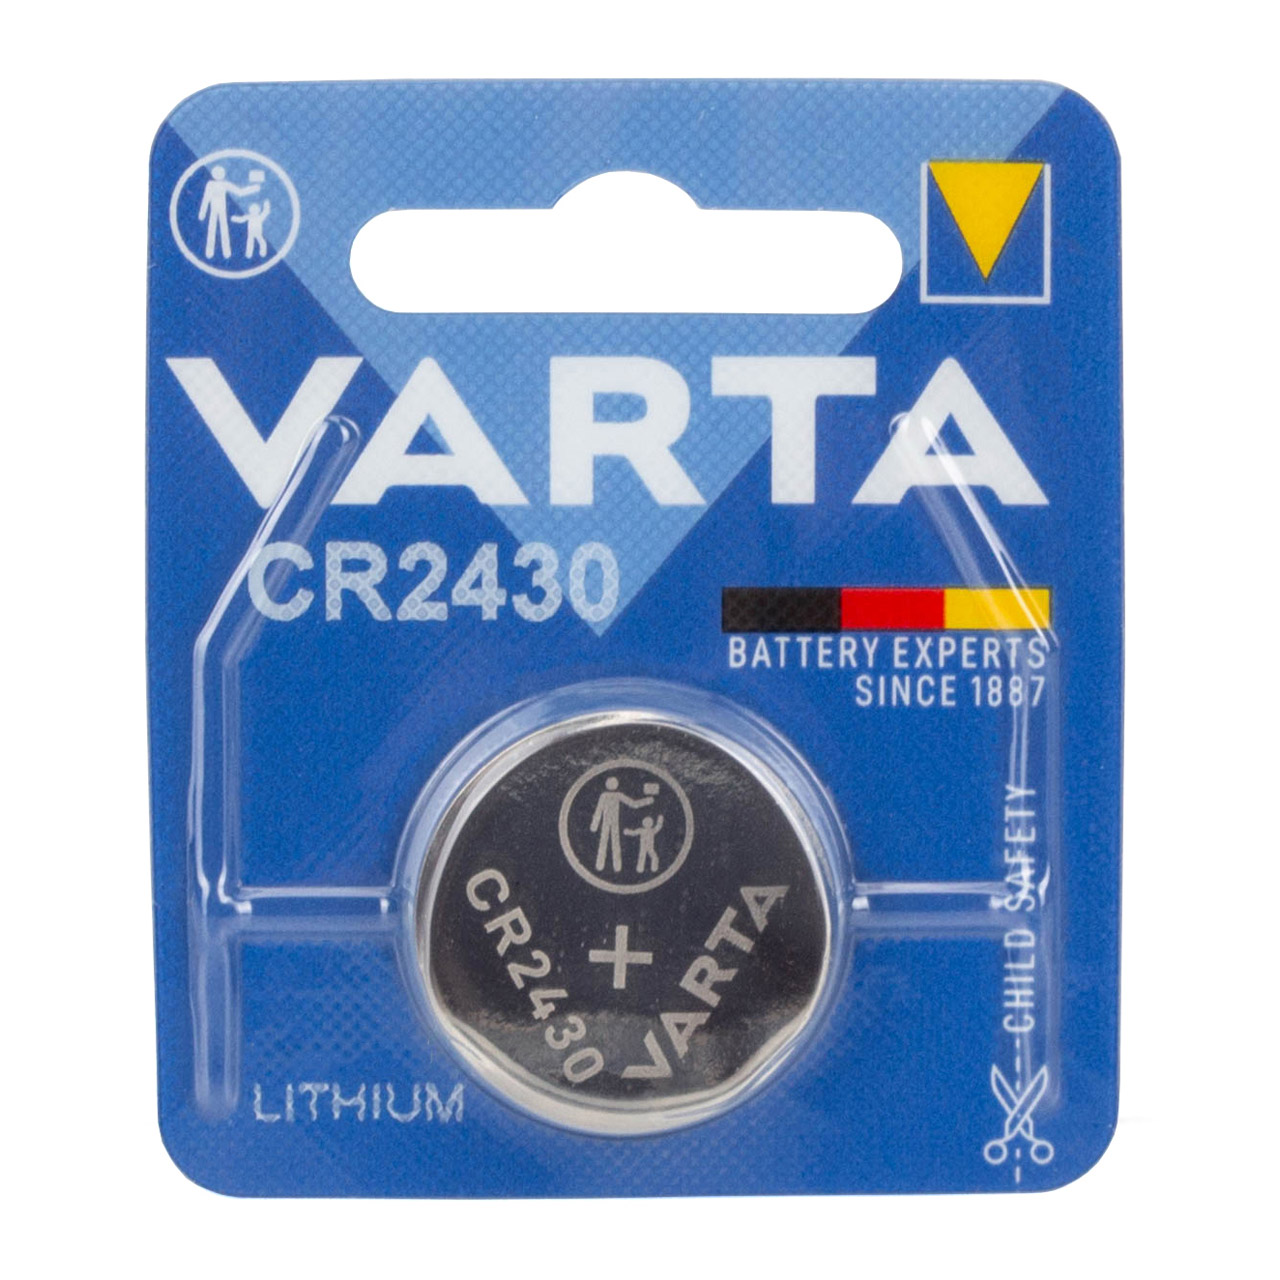 10x VARTA Lithium 3V CR2430 Knopfzelle Knopfbatterie Batterie (MHD 11.2033)